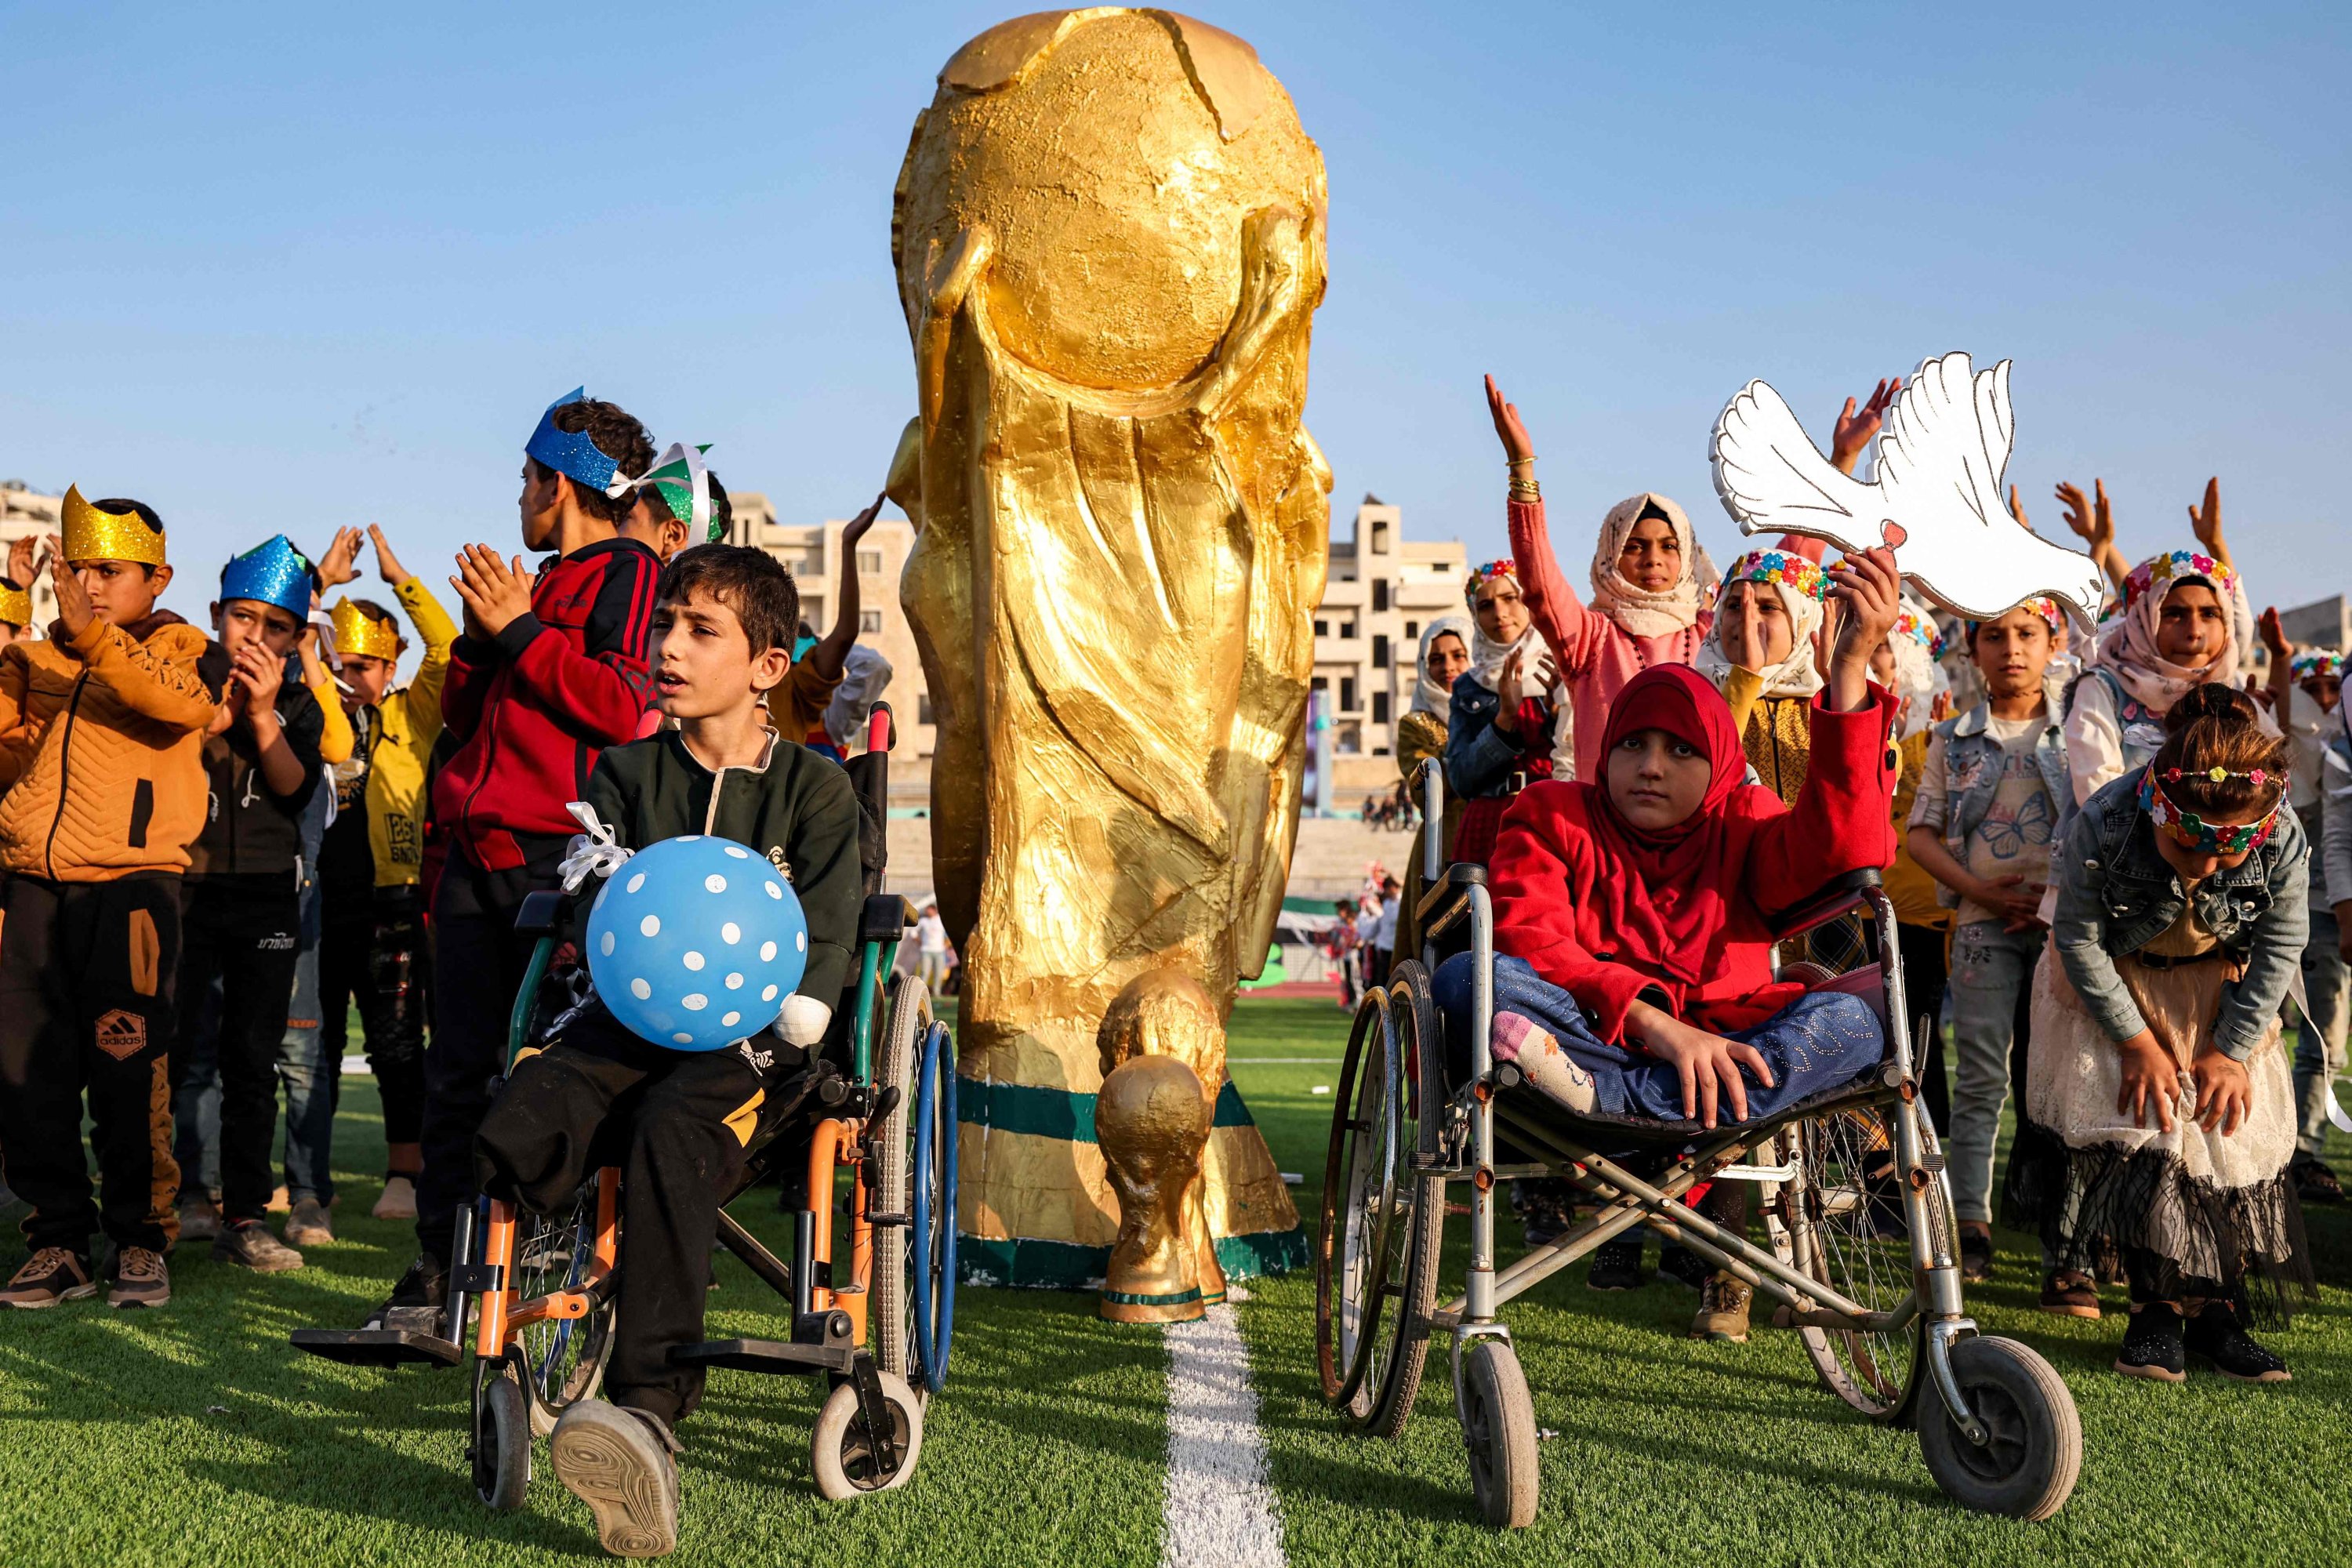 Anak-anak, termasuk mereka yang menggunakan kursi roda, berpose dengan maket trofi Piala Dunia FIFA di lapangan saat upacara pembukaan Piala Dunia 